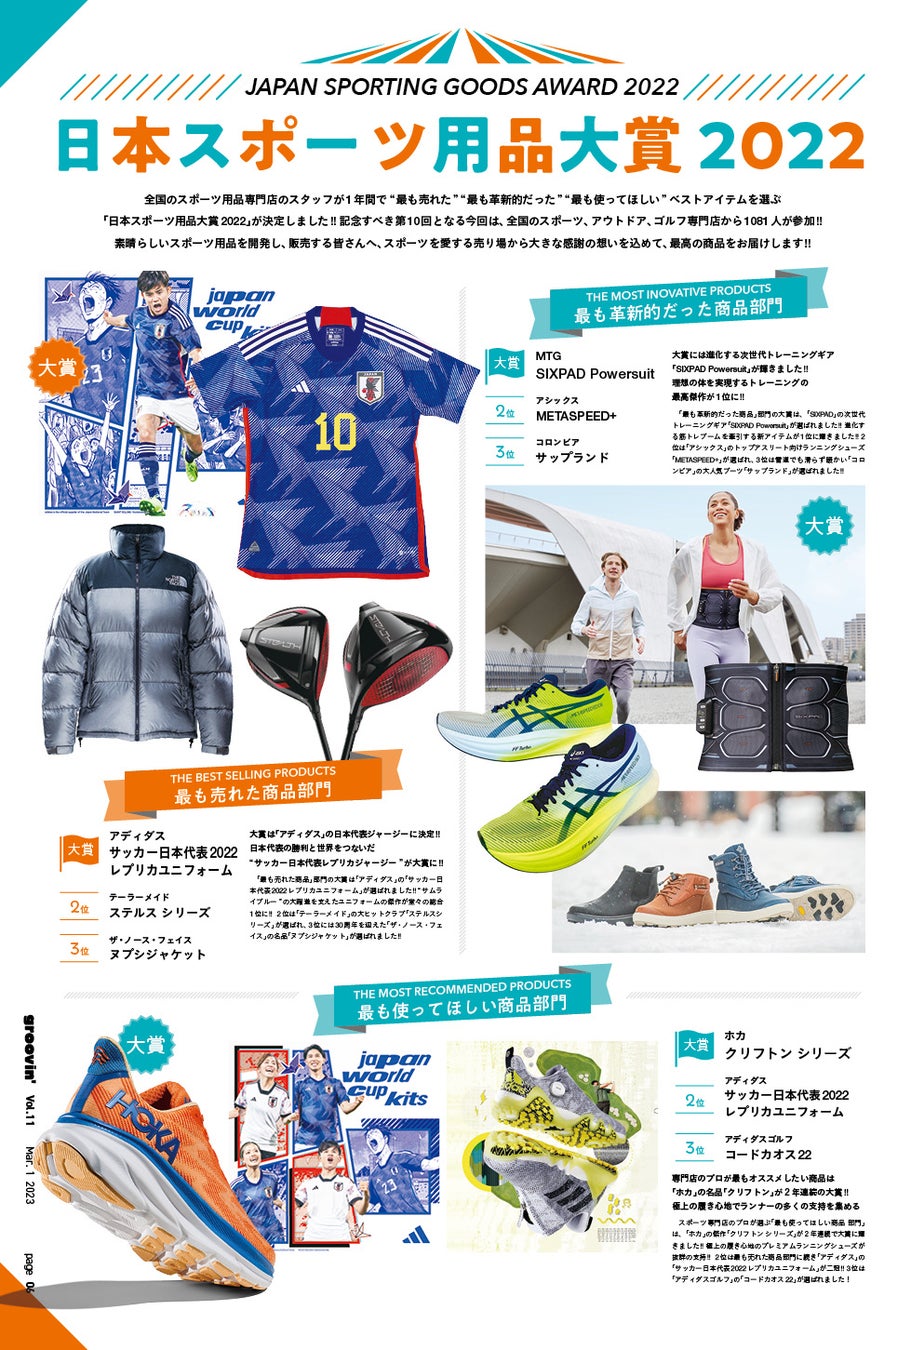 全国のスポーツ専門店のスタッフが選ぶ「日本スポーツ用品大賞2022」が決定しました。～「最も売れた商品」「最も革新的だった商品」「最も使ってほしい商品」「10周年ベストアイテム」が決定！！～